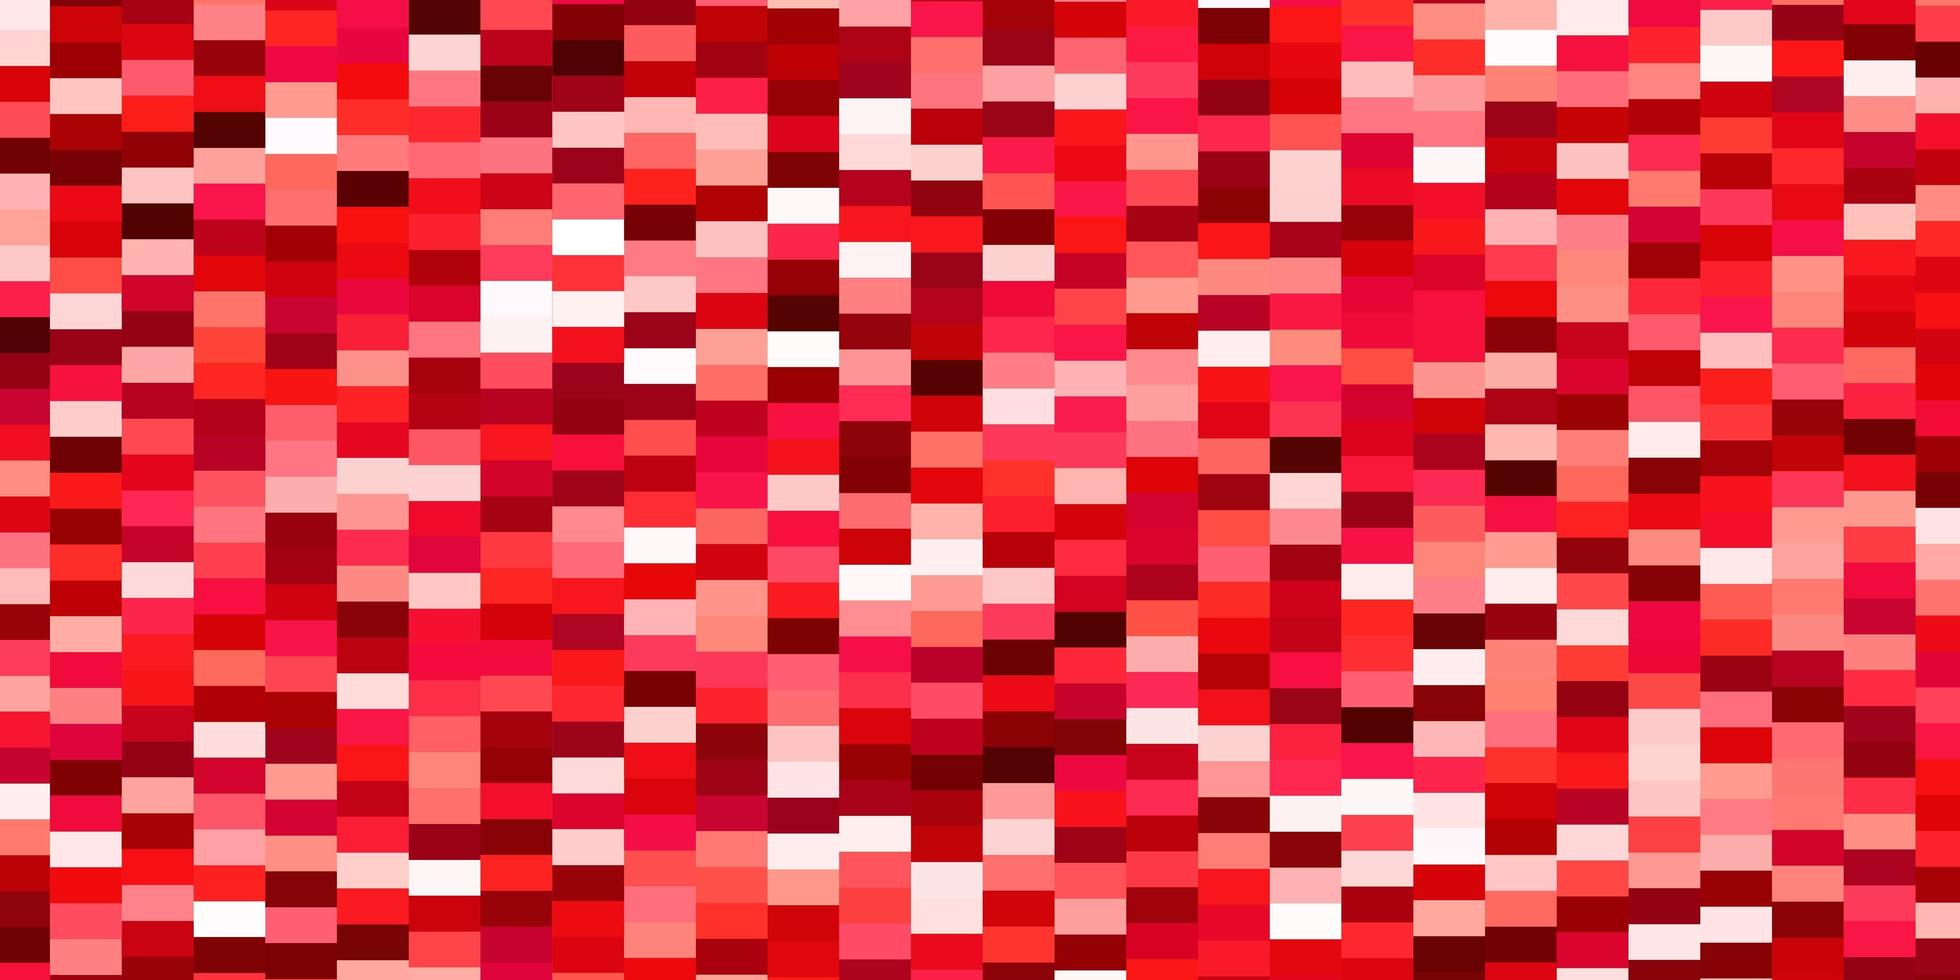 trama vettoriale rosso chiaro in stile rettangolare.